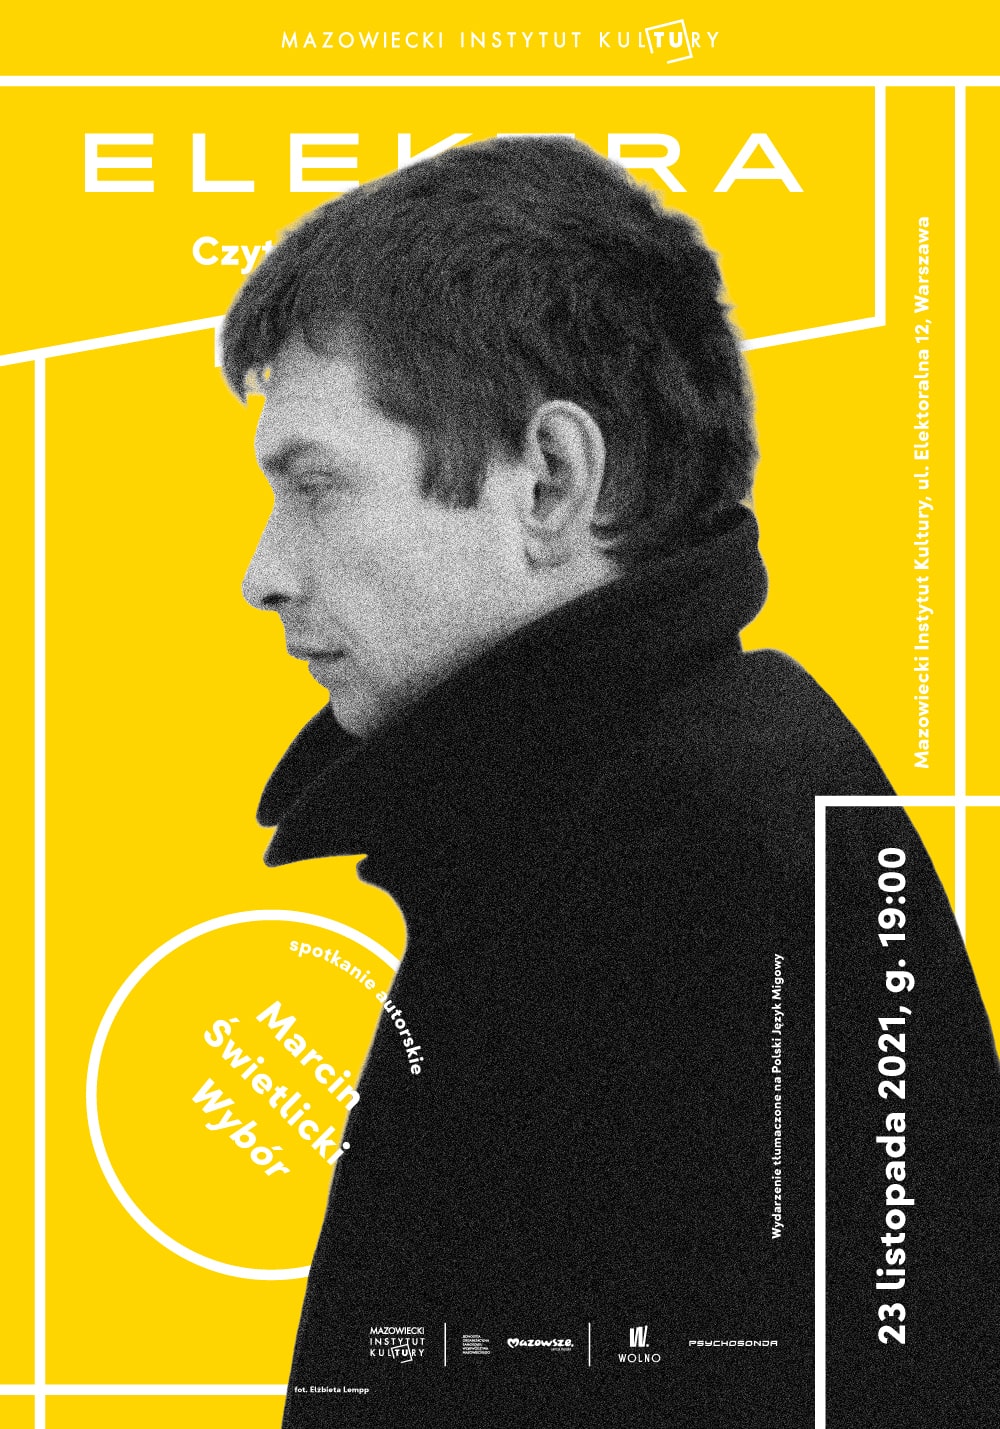 plakat: na żółtym tle zdjęcie profilowe marcina świetlickiego